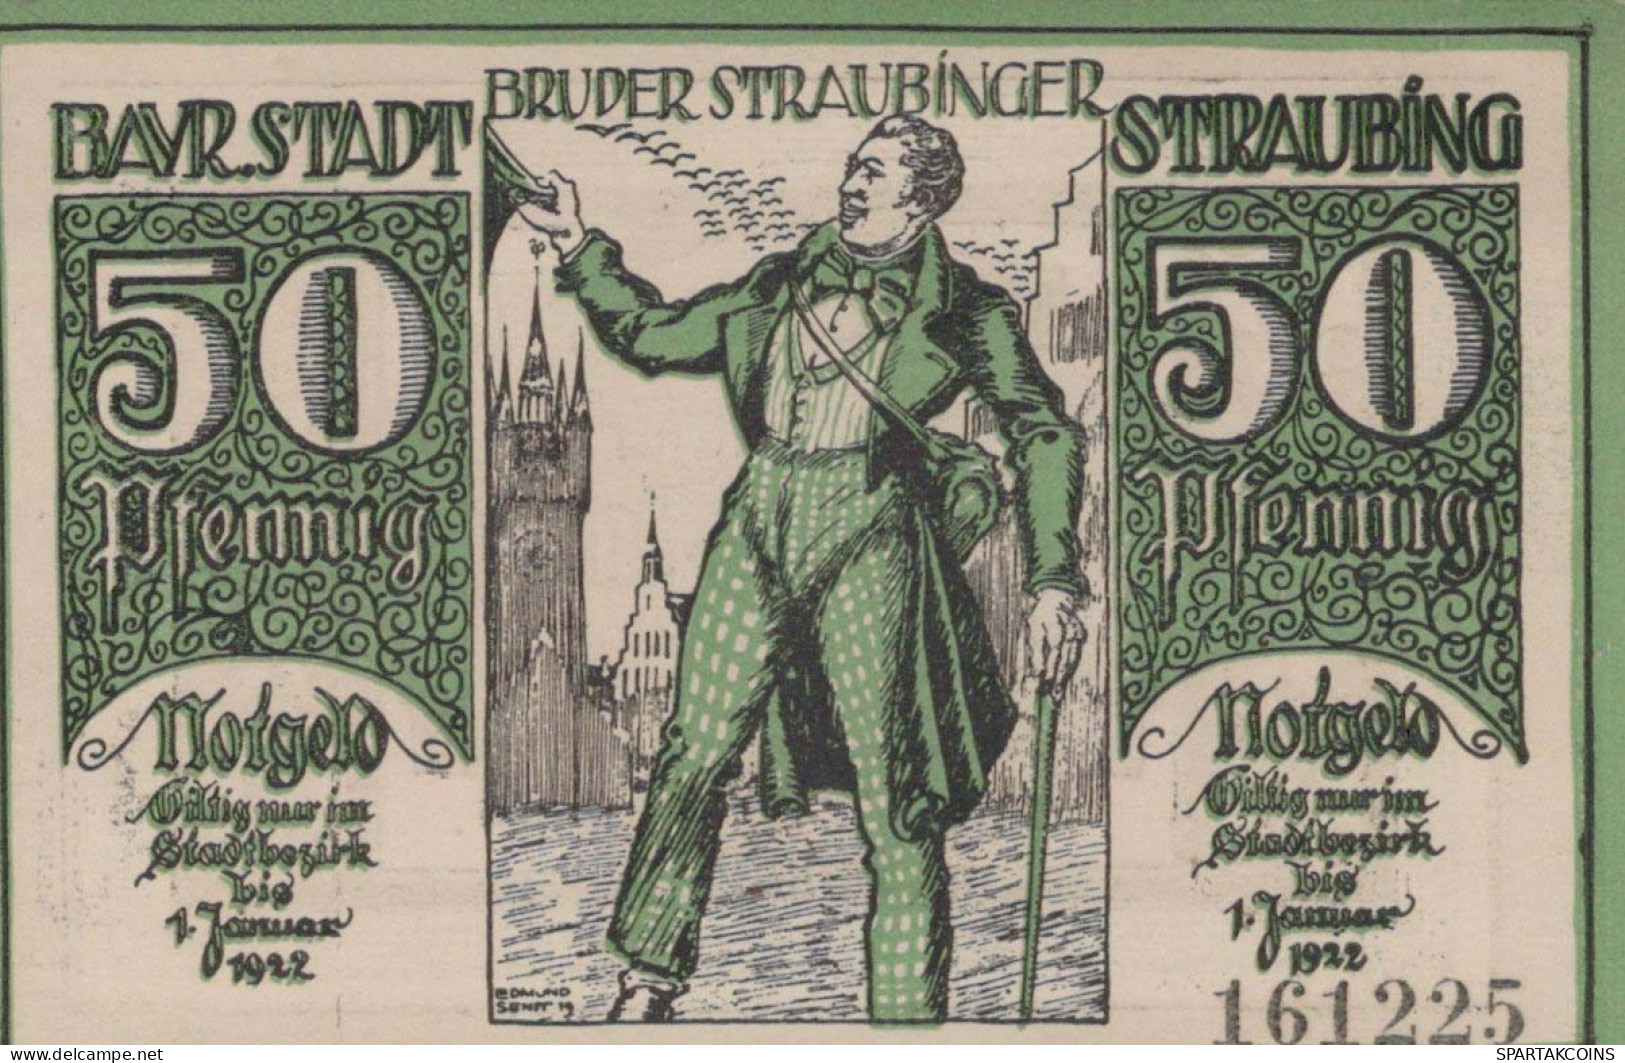 50 PFENNIG 1919 Stadt STRAUBING Bavaria UNC DEUTSCHLAND Notgeld Banknote #PJ180 - [11] Local Banknote Issues